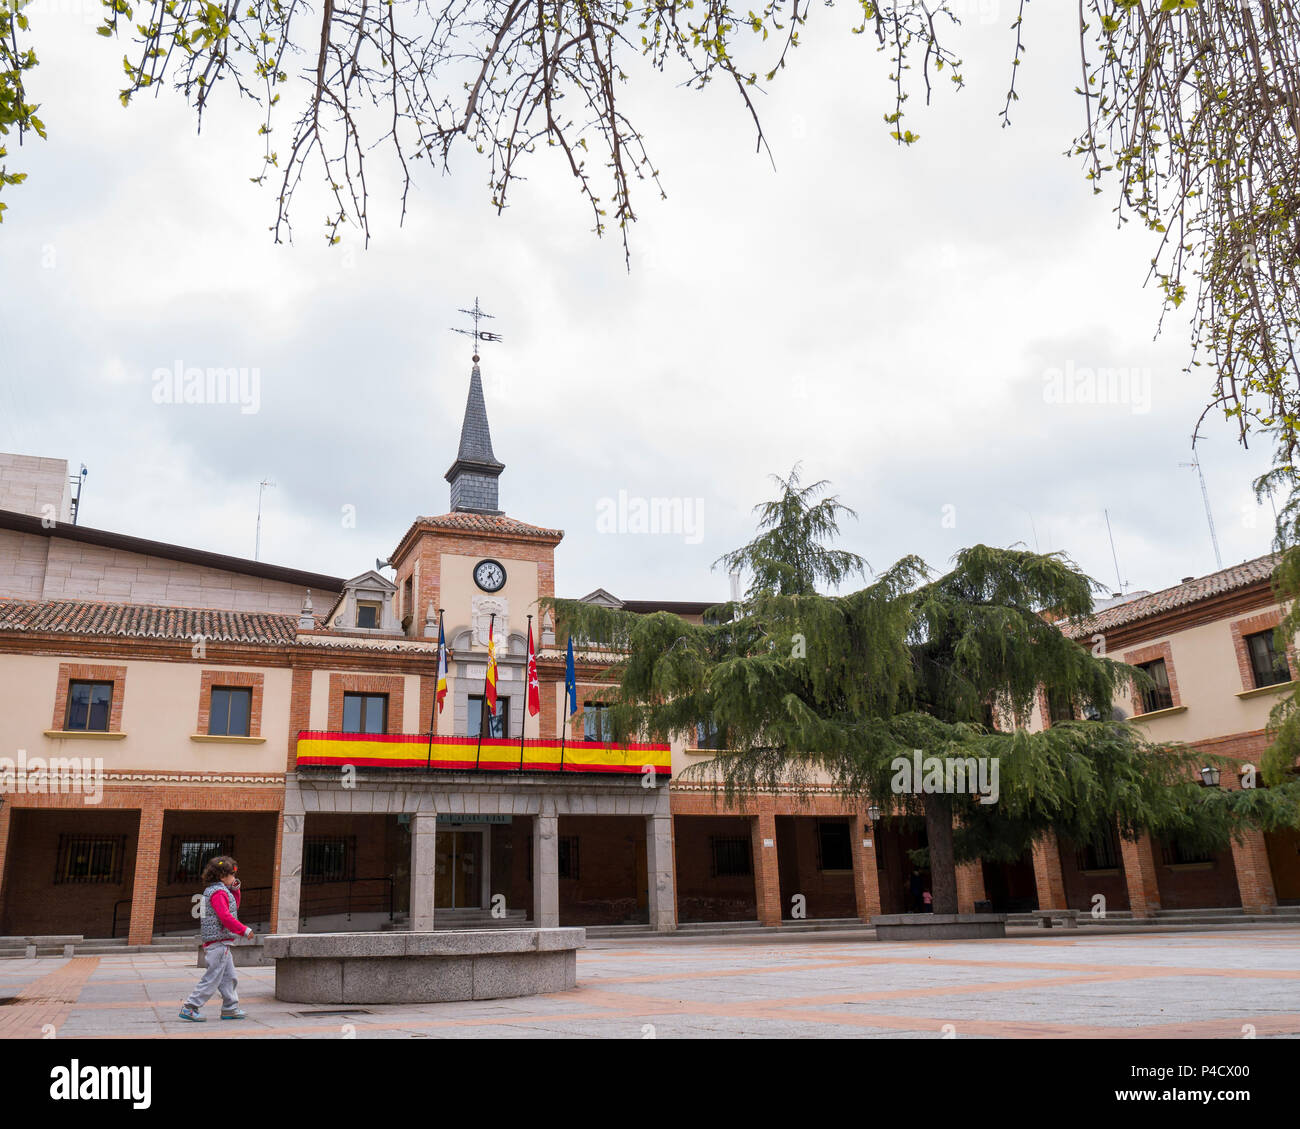 Ayuntamiento de Las Rozas. Madrid. España Stock Photo - Alamy